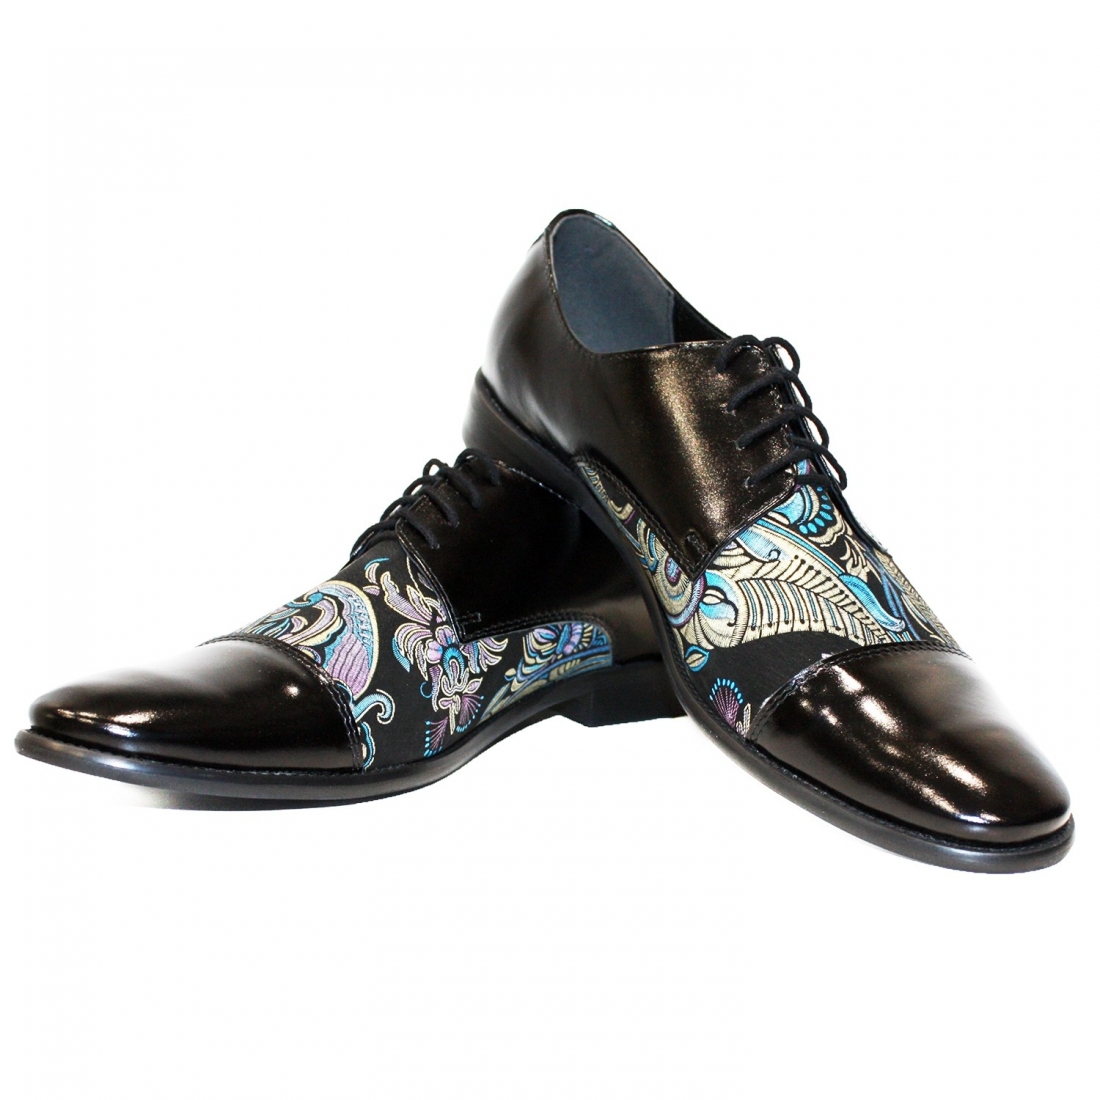 Modello Ulerro - Scarpe Classiche - Handmade Colorful Italian Leather Shoes